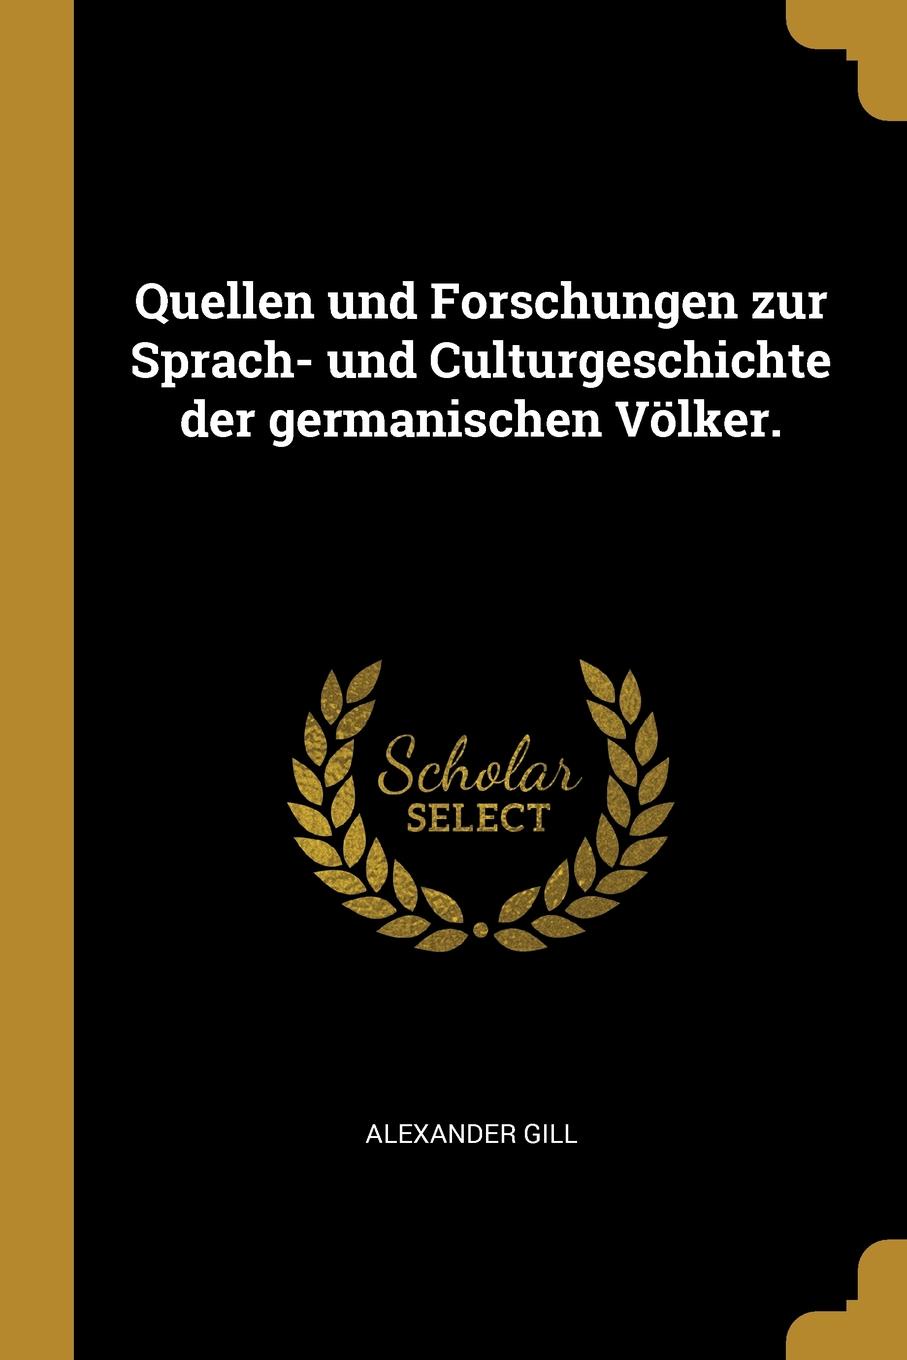 Quellen und Forschungen zur Sprach- und Culturgeschichte der germanischen Volker.